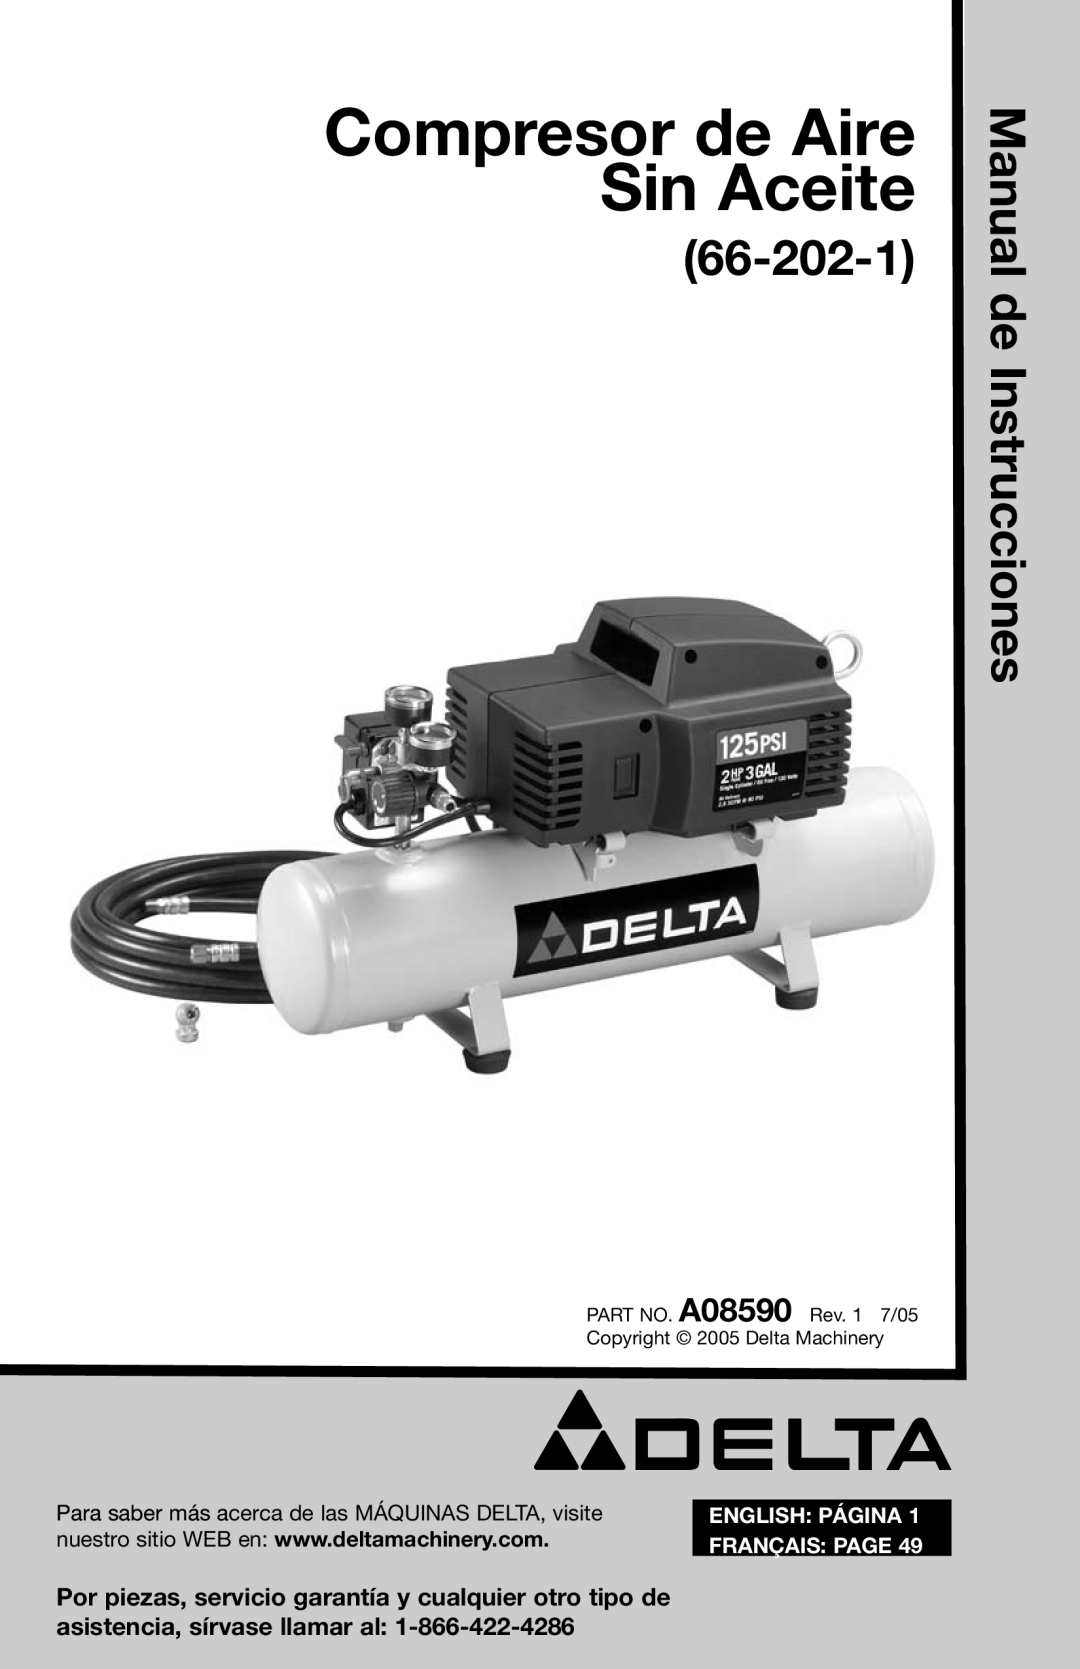 Delta A08590 Compresor de Aire Sin Aceite, Manual de Instrucciones, 66-202-1, English Página, Français Page 